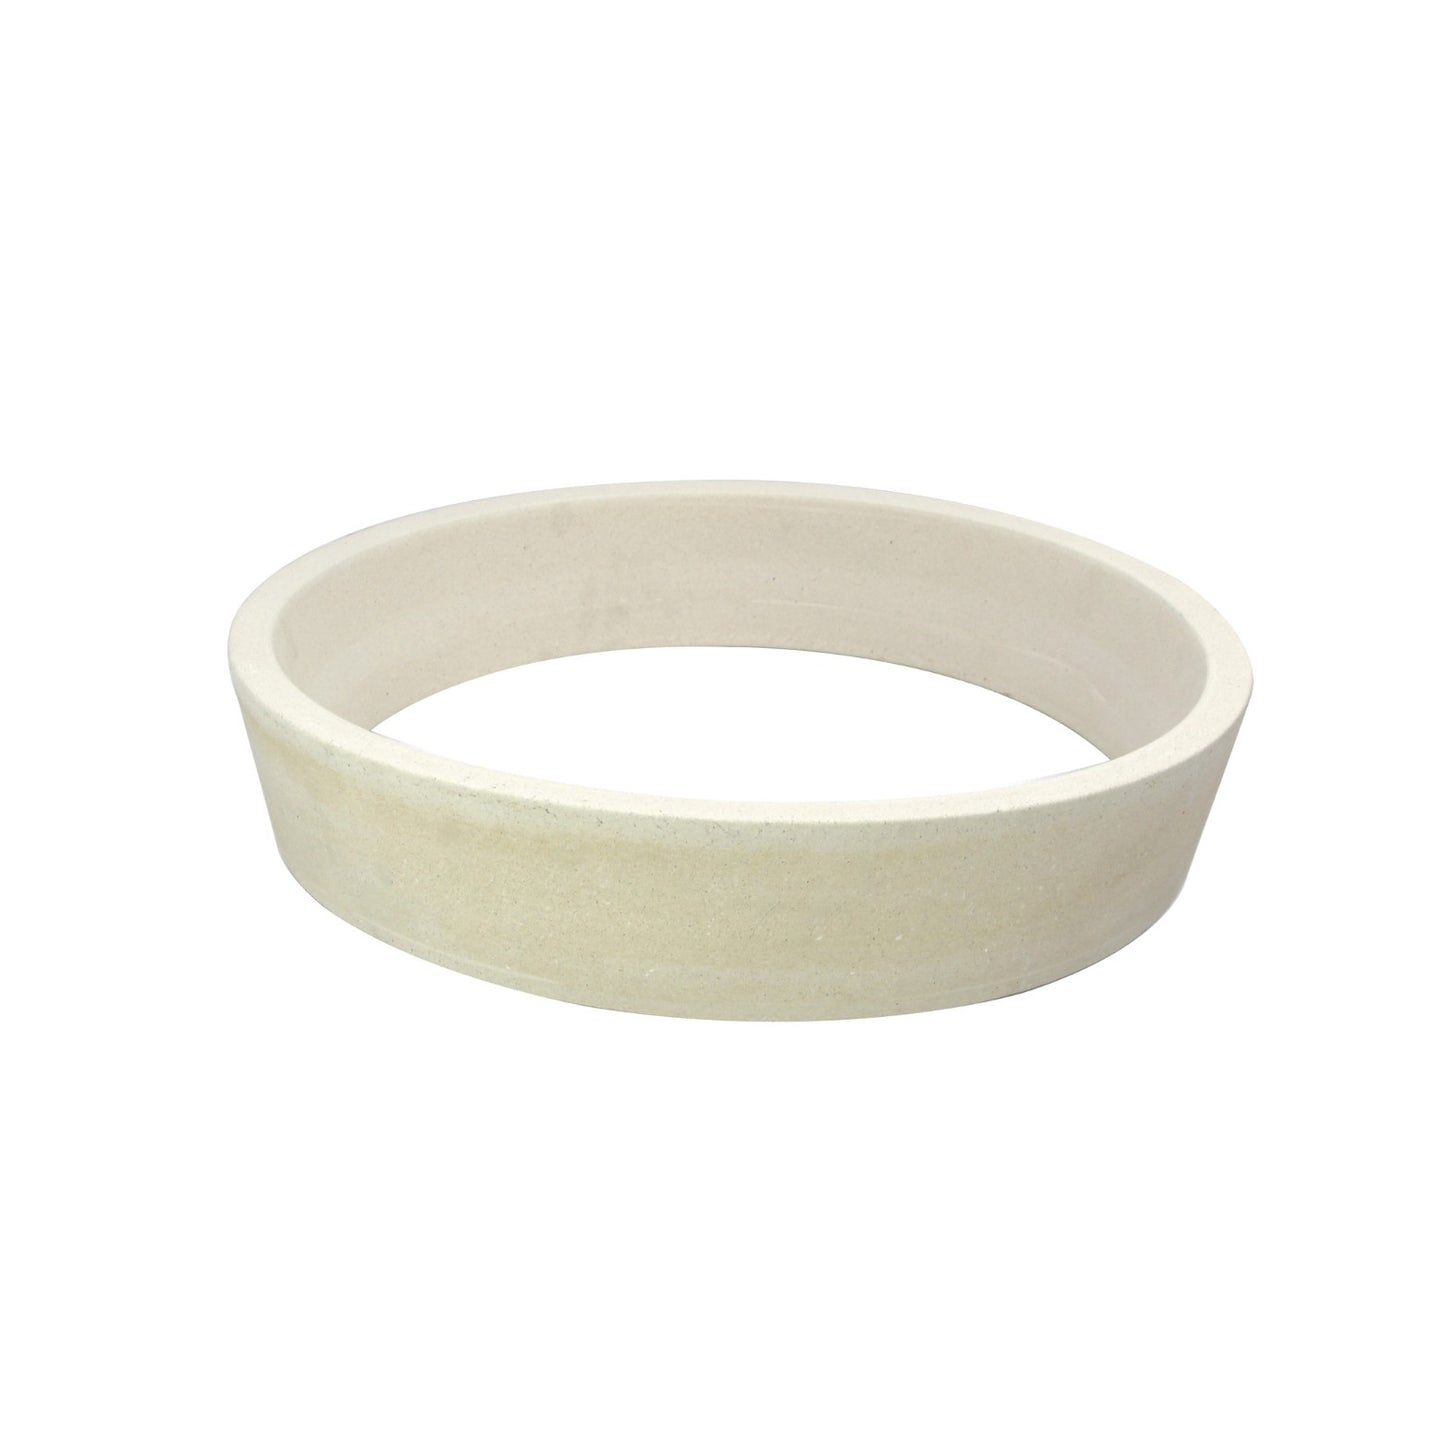 Vuurring/Keramische Ring- XL2 49 cm